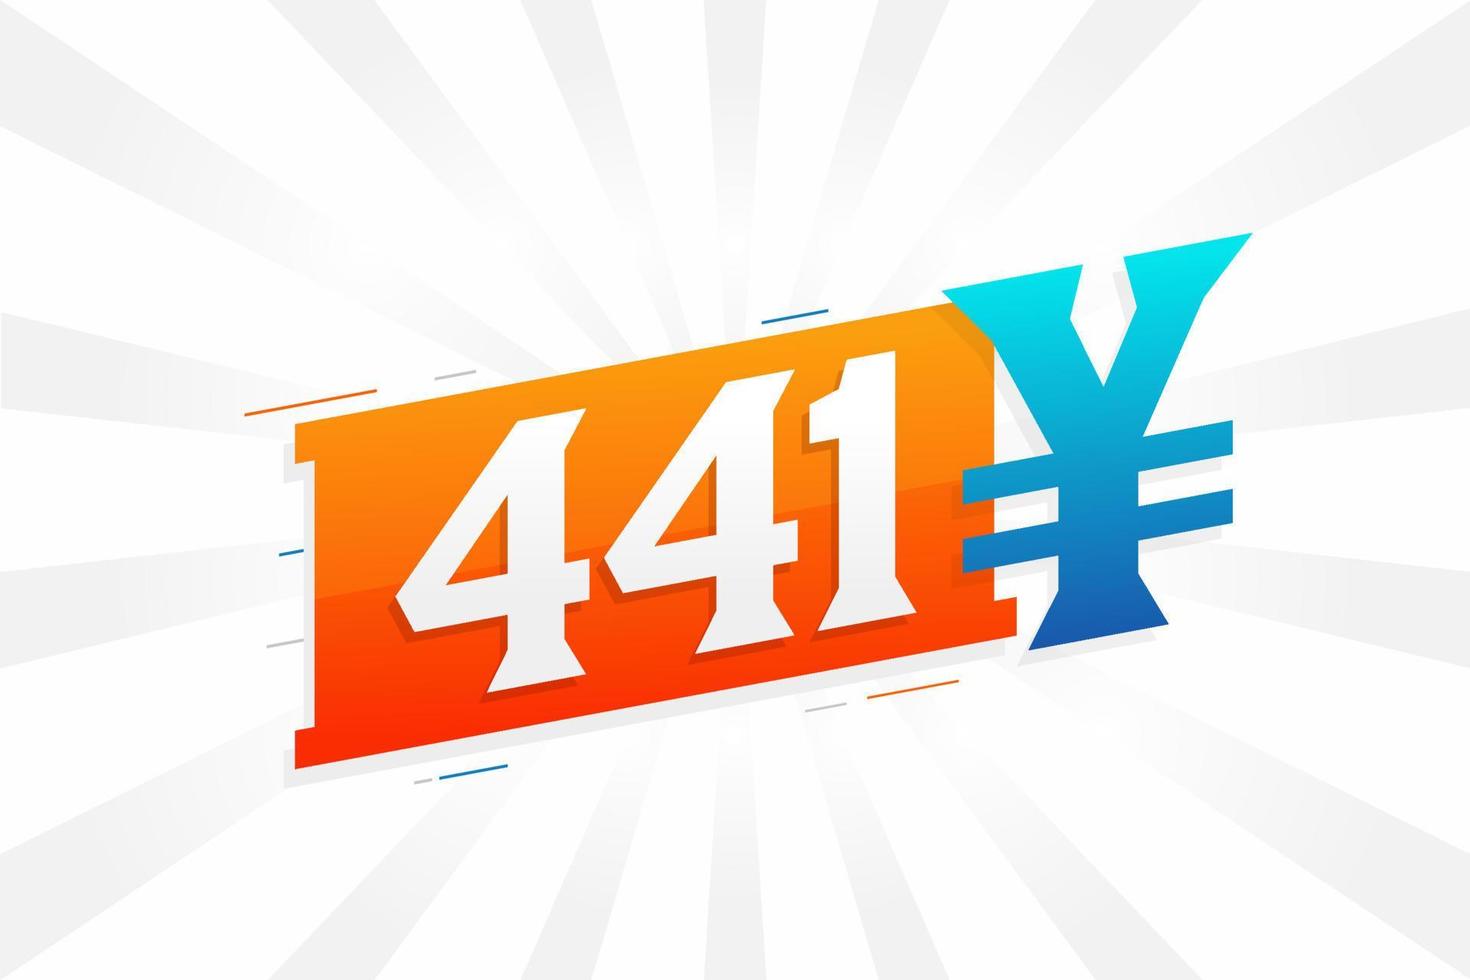 441 yuan symbole de texte vectoriel de devise chinoise. 441 yen monnaie japonaise vecteur de stock d'argent